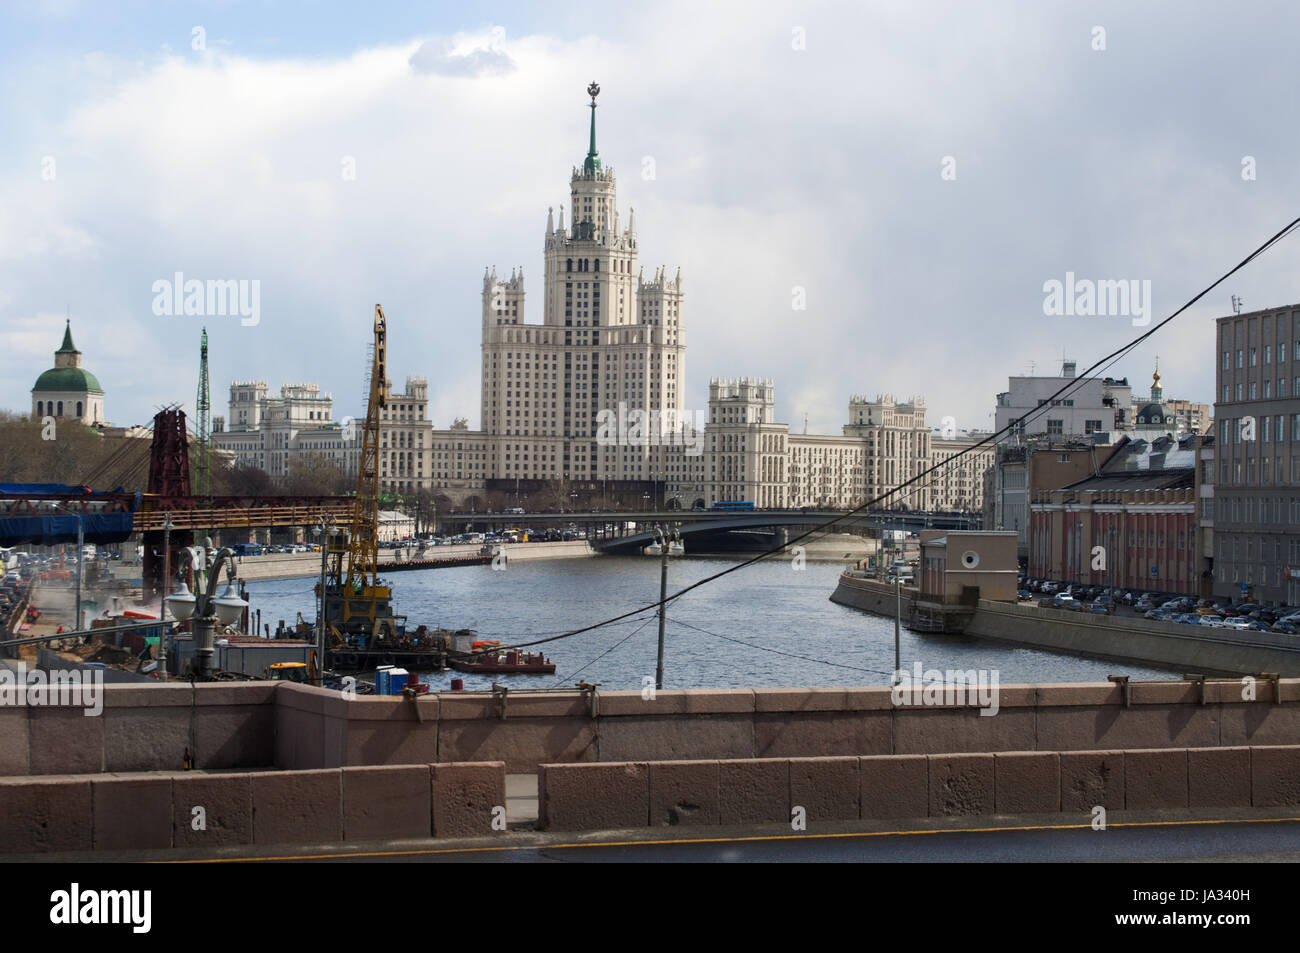 Moskau, Russland: Blick auf den Kotelnicheskaya Damm Gebäude, eines der sieben Schwestern-Gruppe von Wolkenkratzern im stalinistischen Stil gestaltet Stockfoto